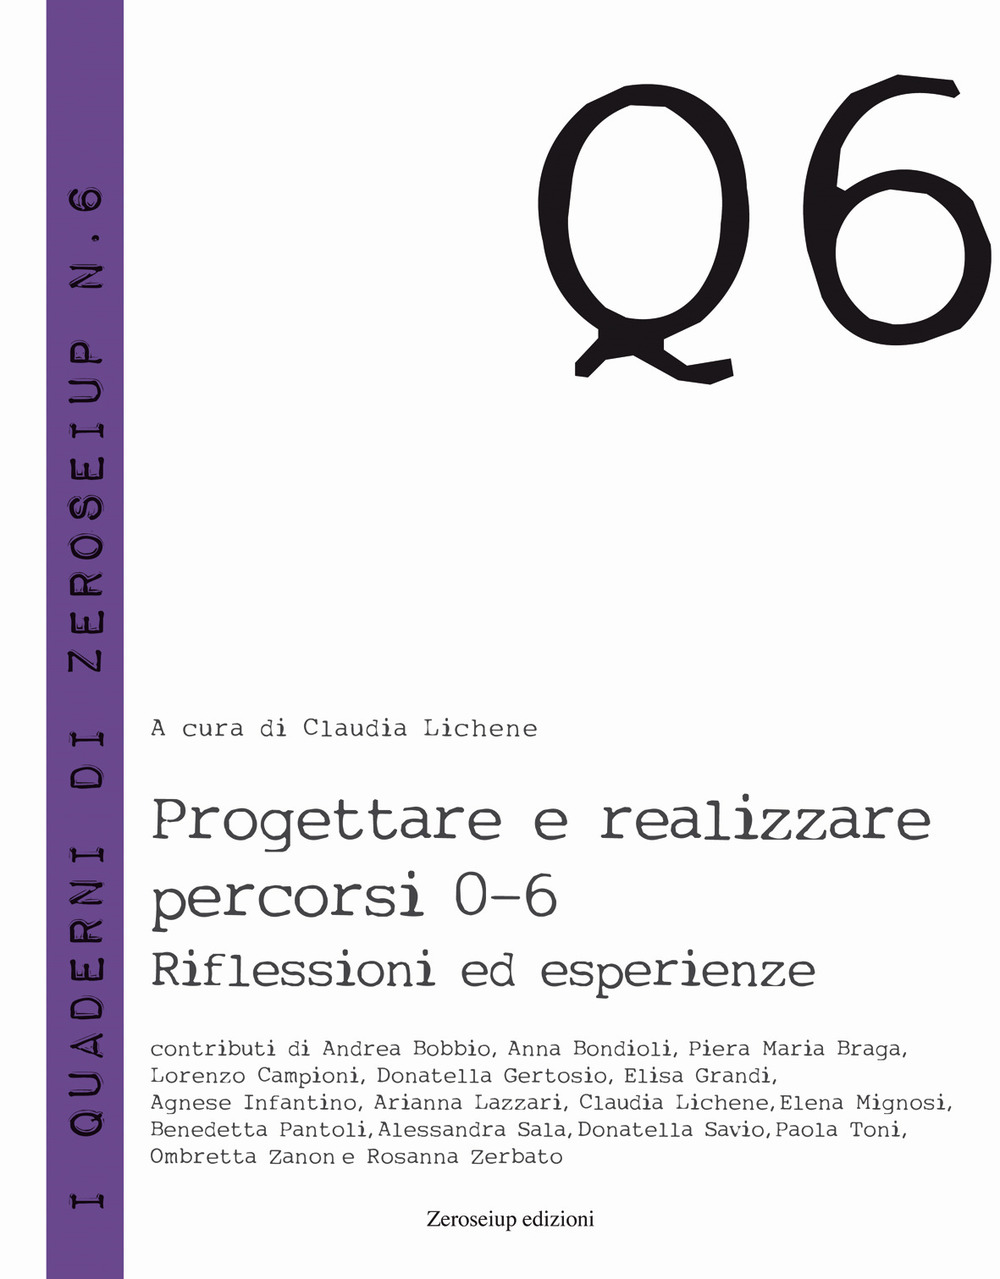 Image of Progettare e realizzzare percorsi 0-6. Riflessioni ed esperienze